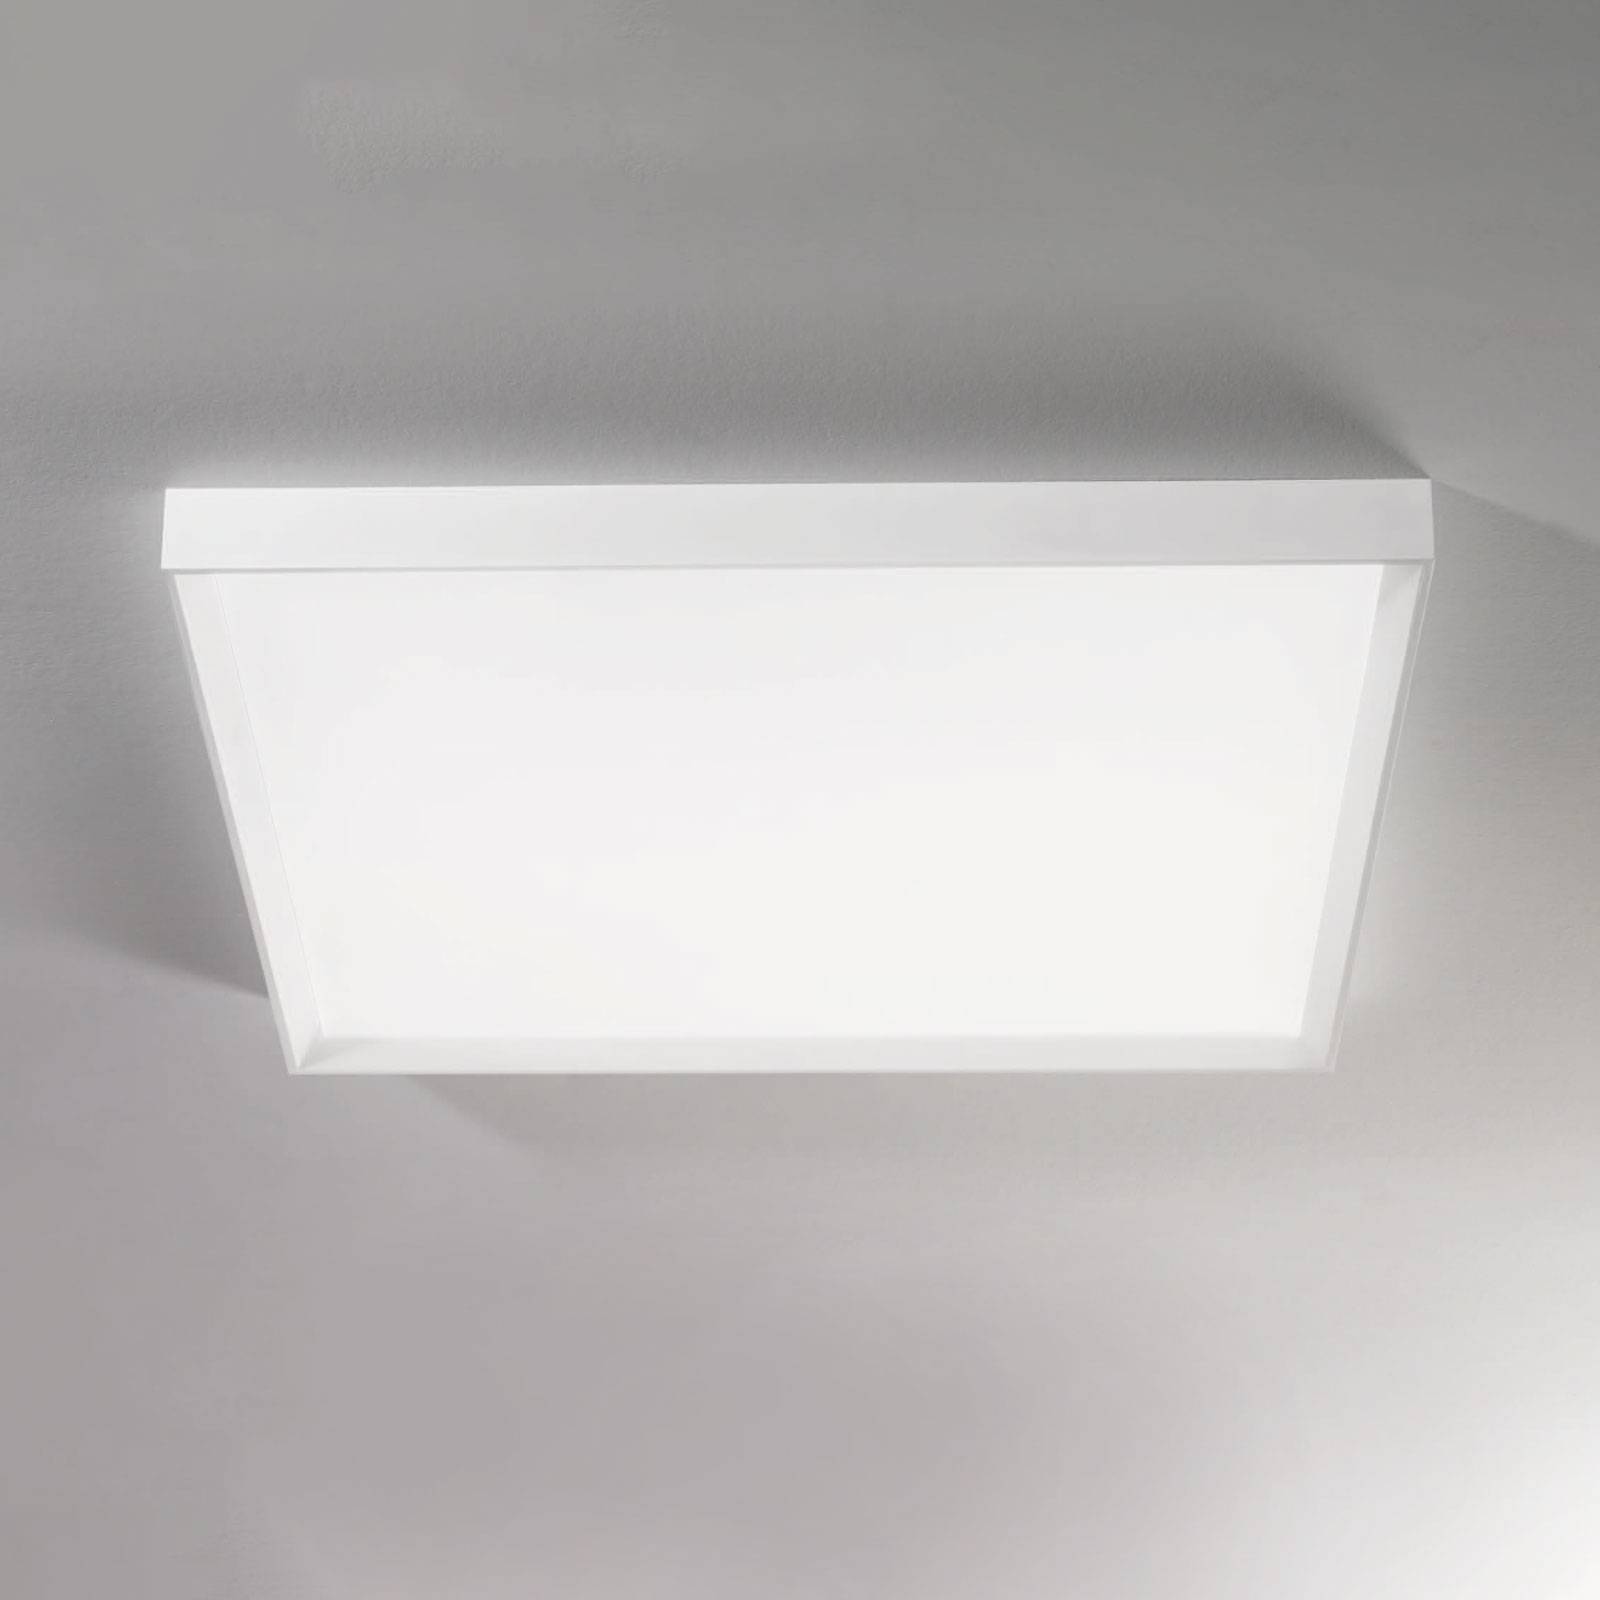 Linea light led mennyezeti lámpa tara maxi, 74 cm x 74 cm